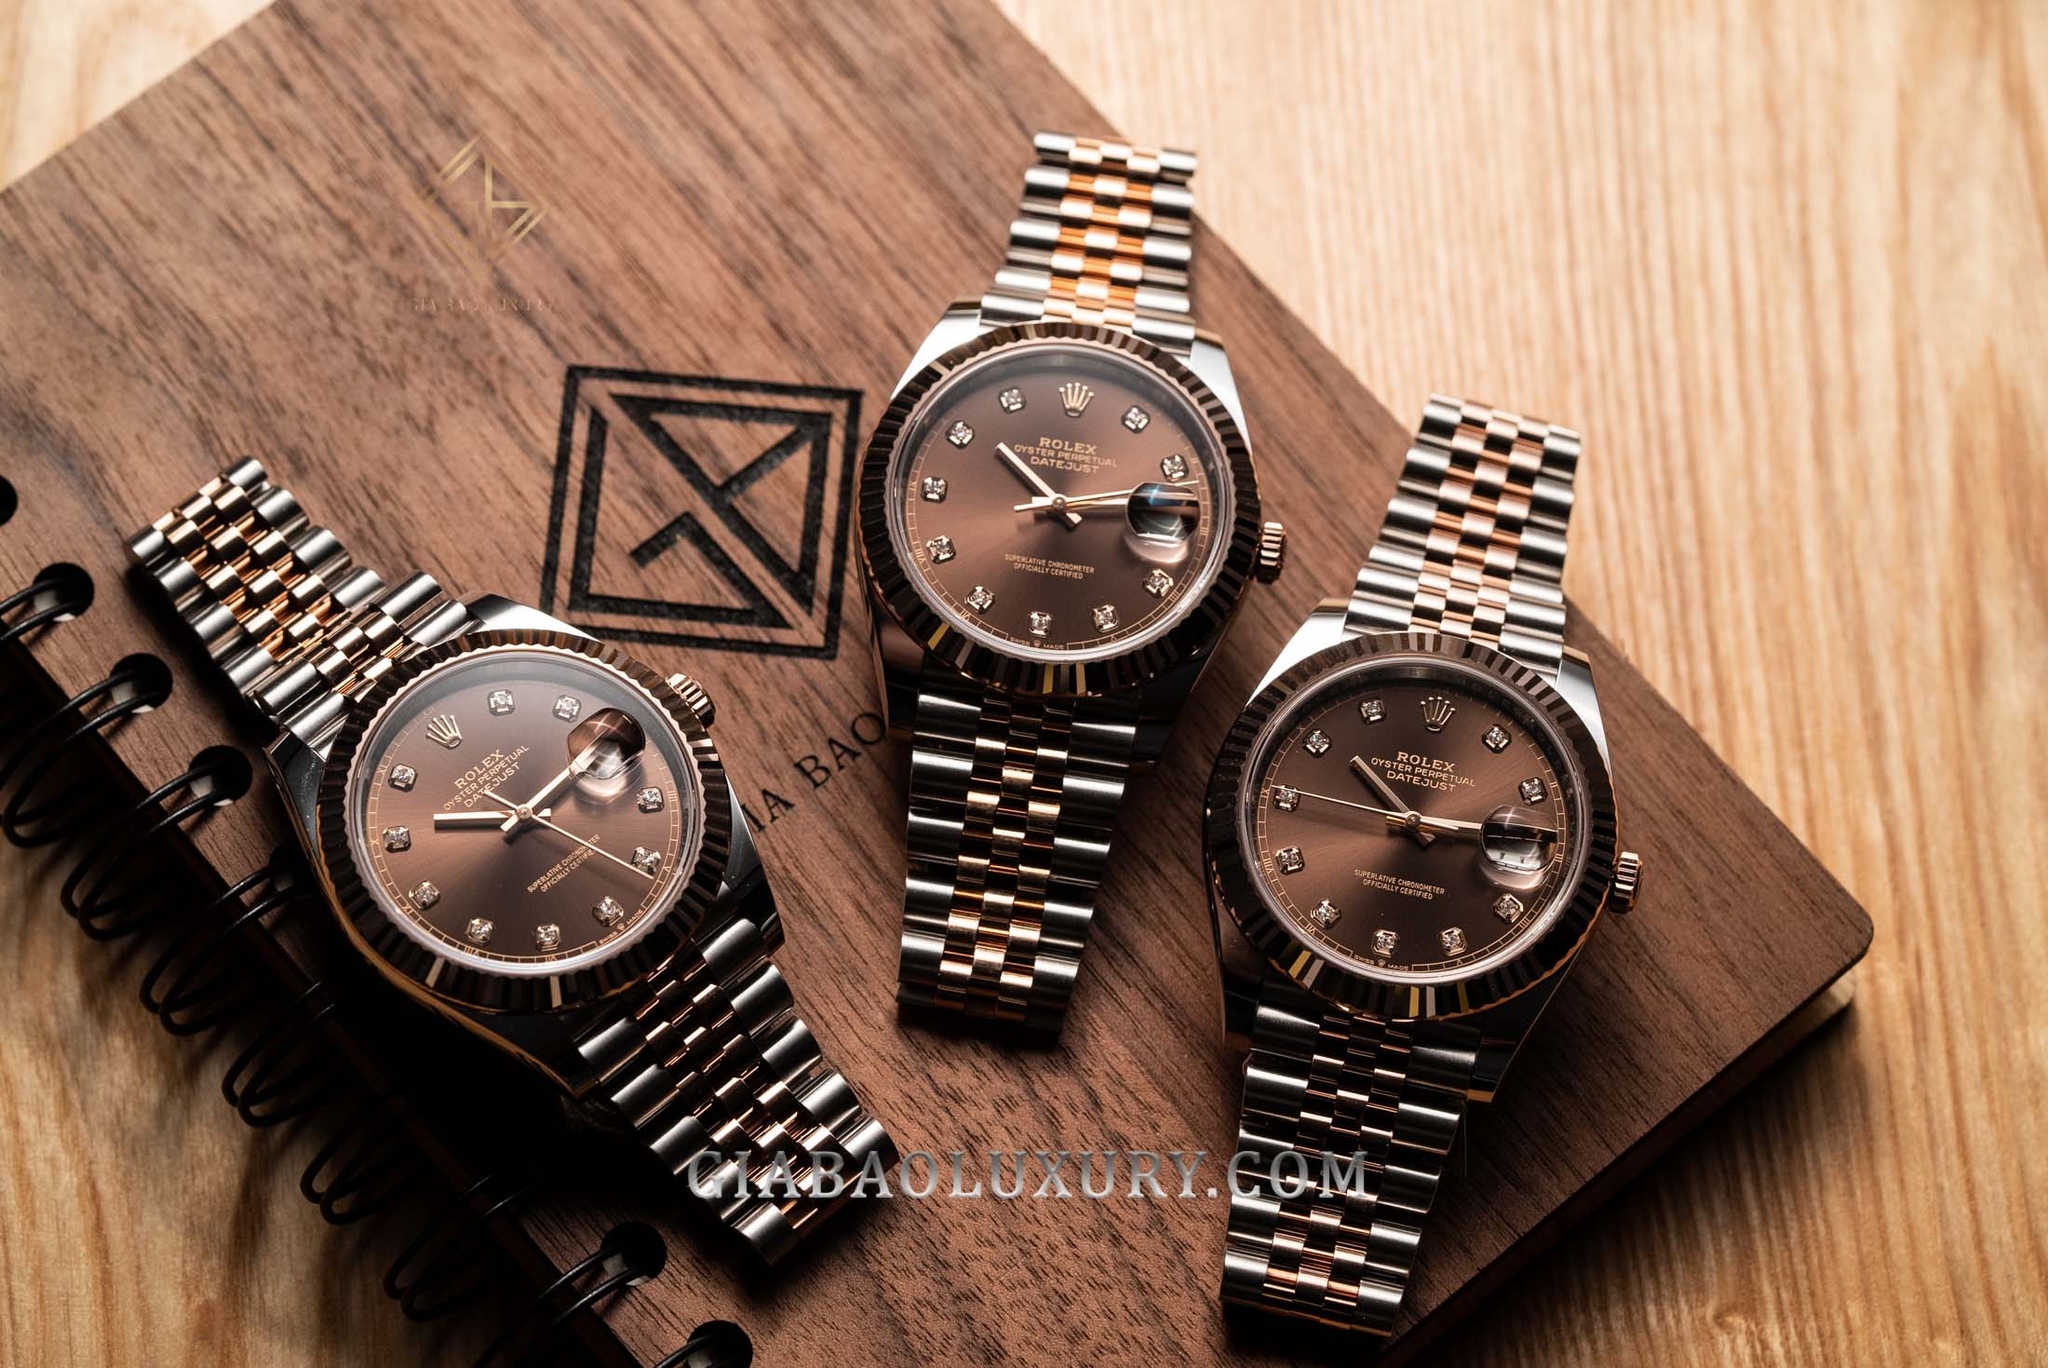 Bộ sưu tập này đang là điểm nhấn của các buổi liên hoan và sự kiện quan trọng. Hãy ngắm nhìn những chiếc đồng hồ Rolex này để xem sự hoàn hảo và đẳng cấp của chúng.